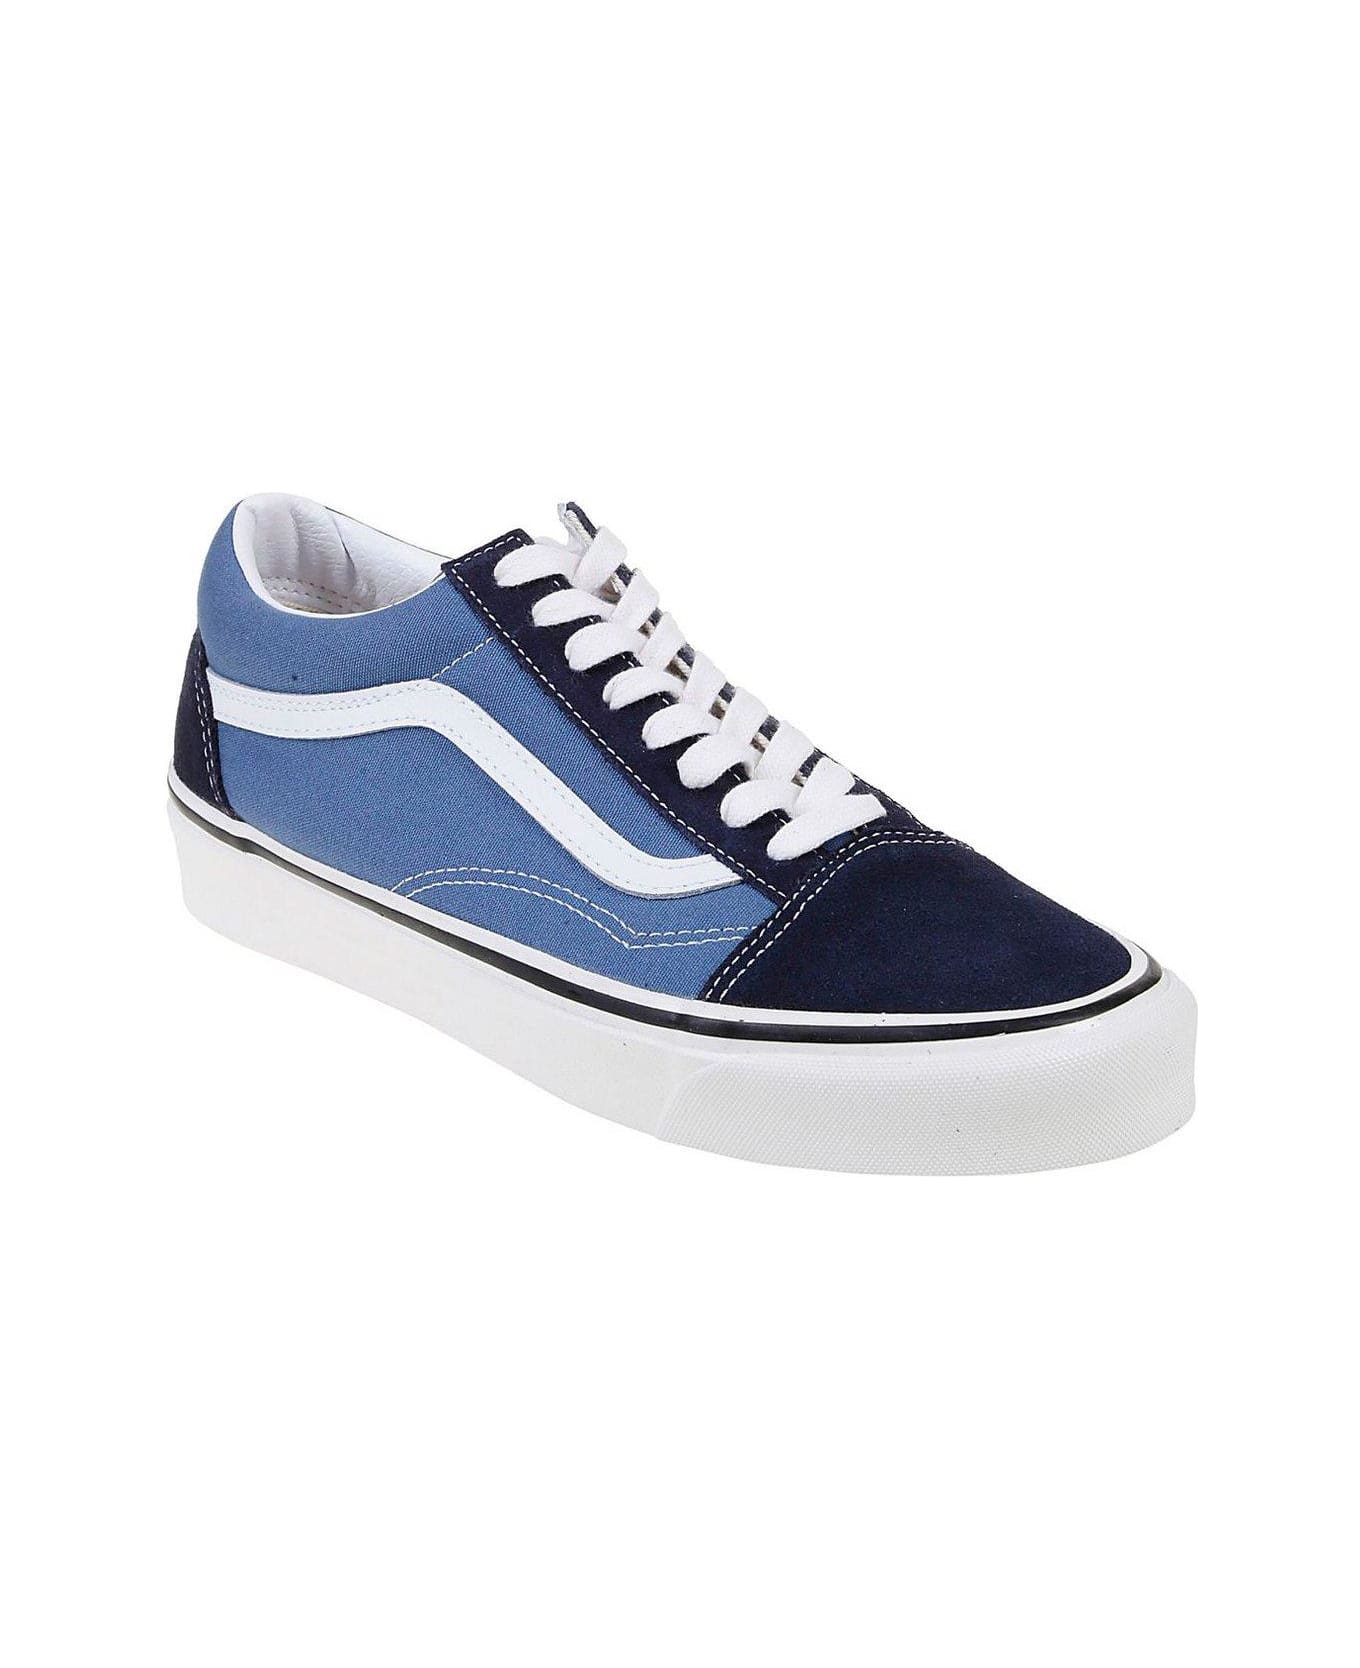 Vans Old Skool 36 Dx Lace-up Sneakers - LIGHT BLUE スニーカー